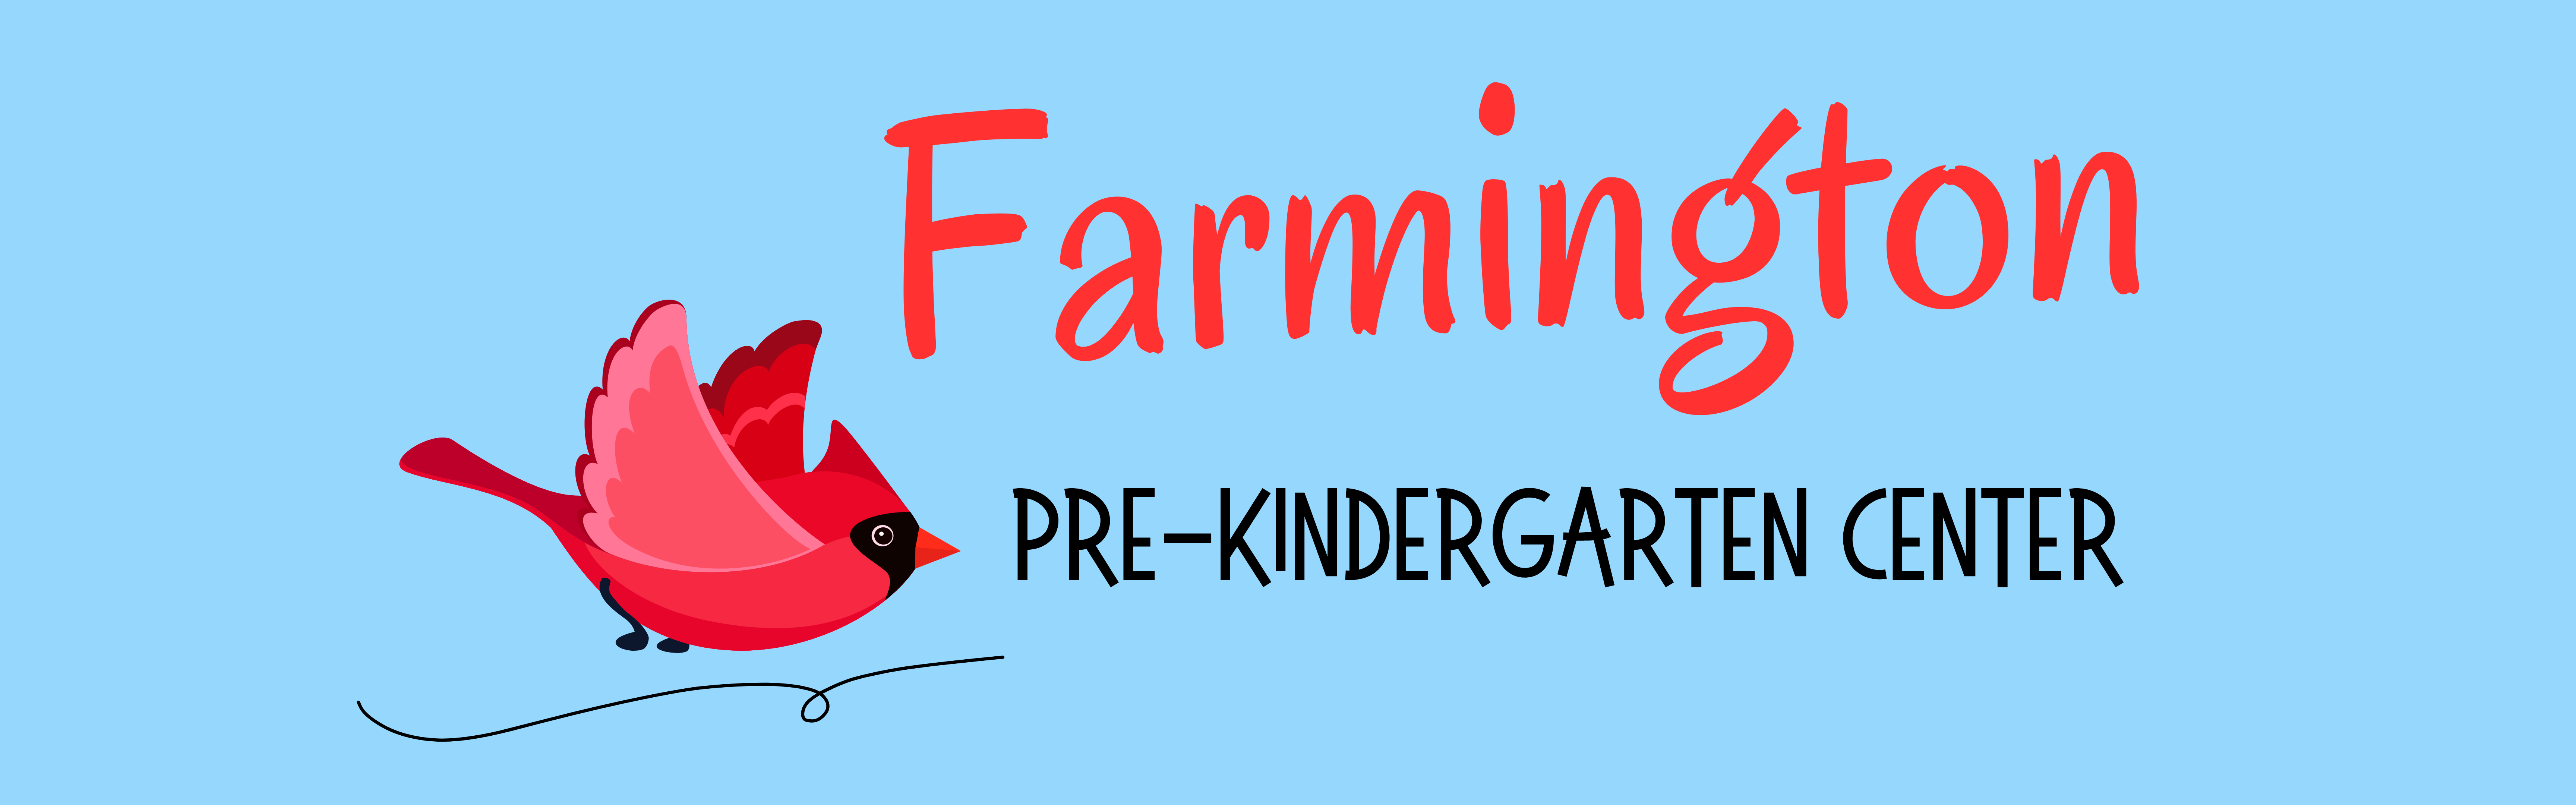 Farmington Pre-Kindergarten with Cardinal banner